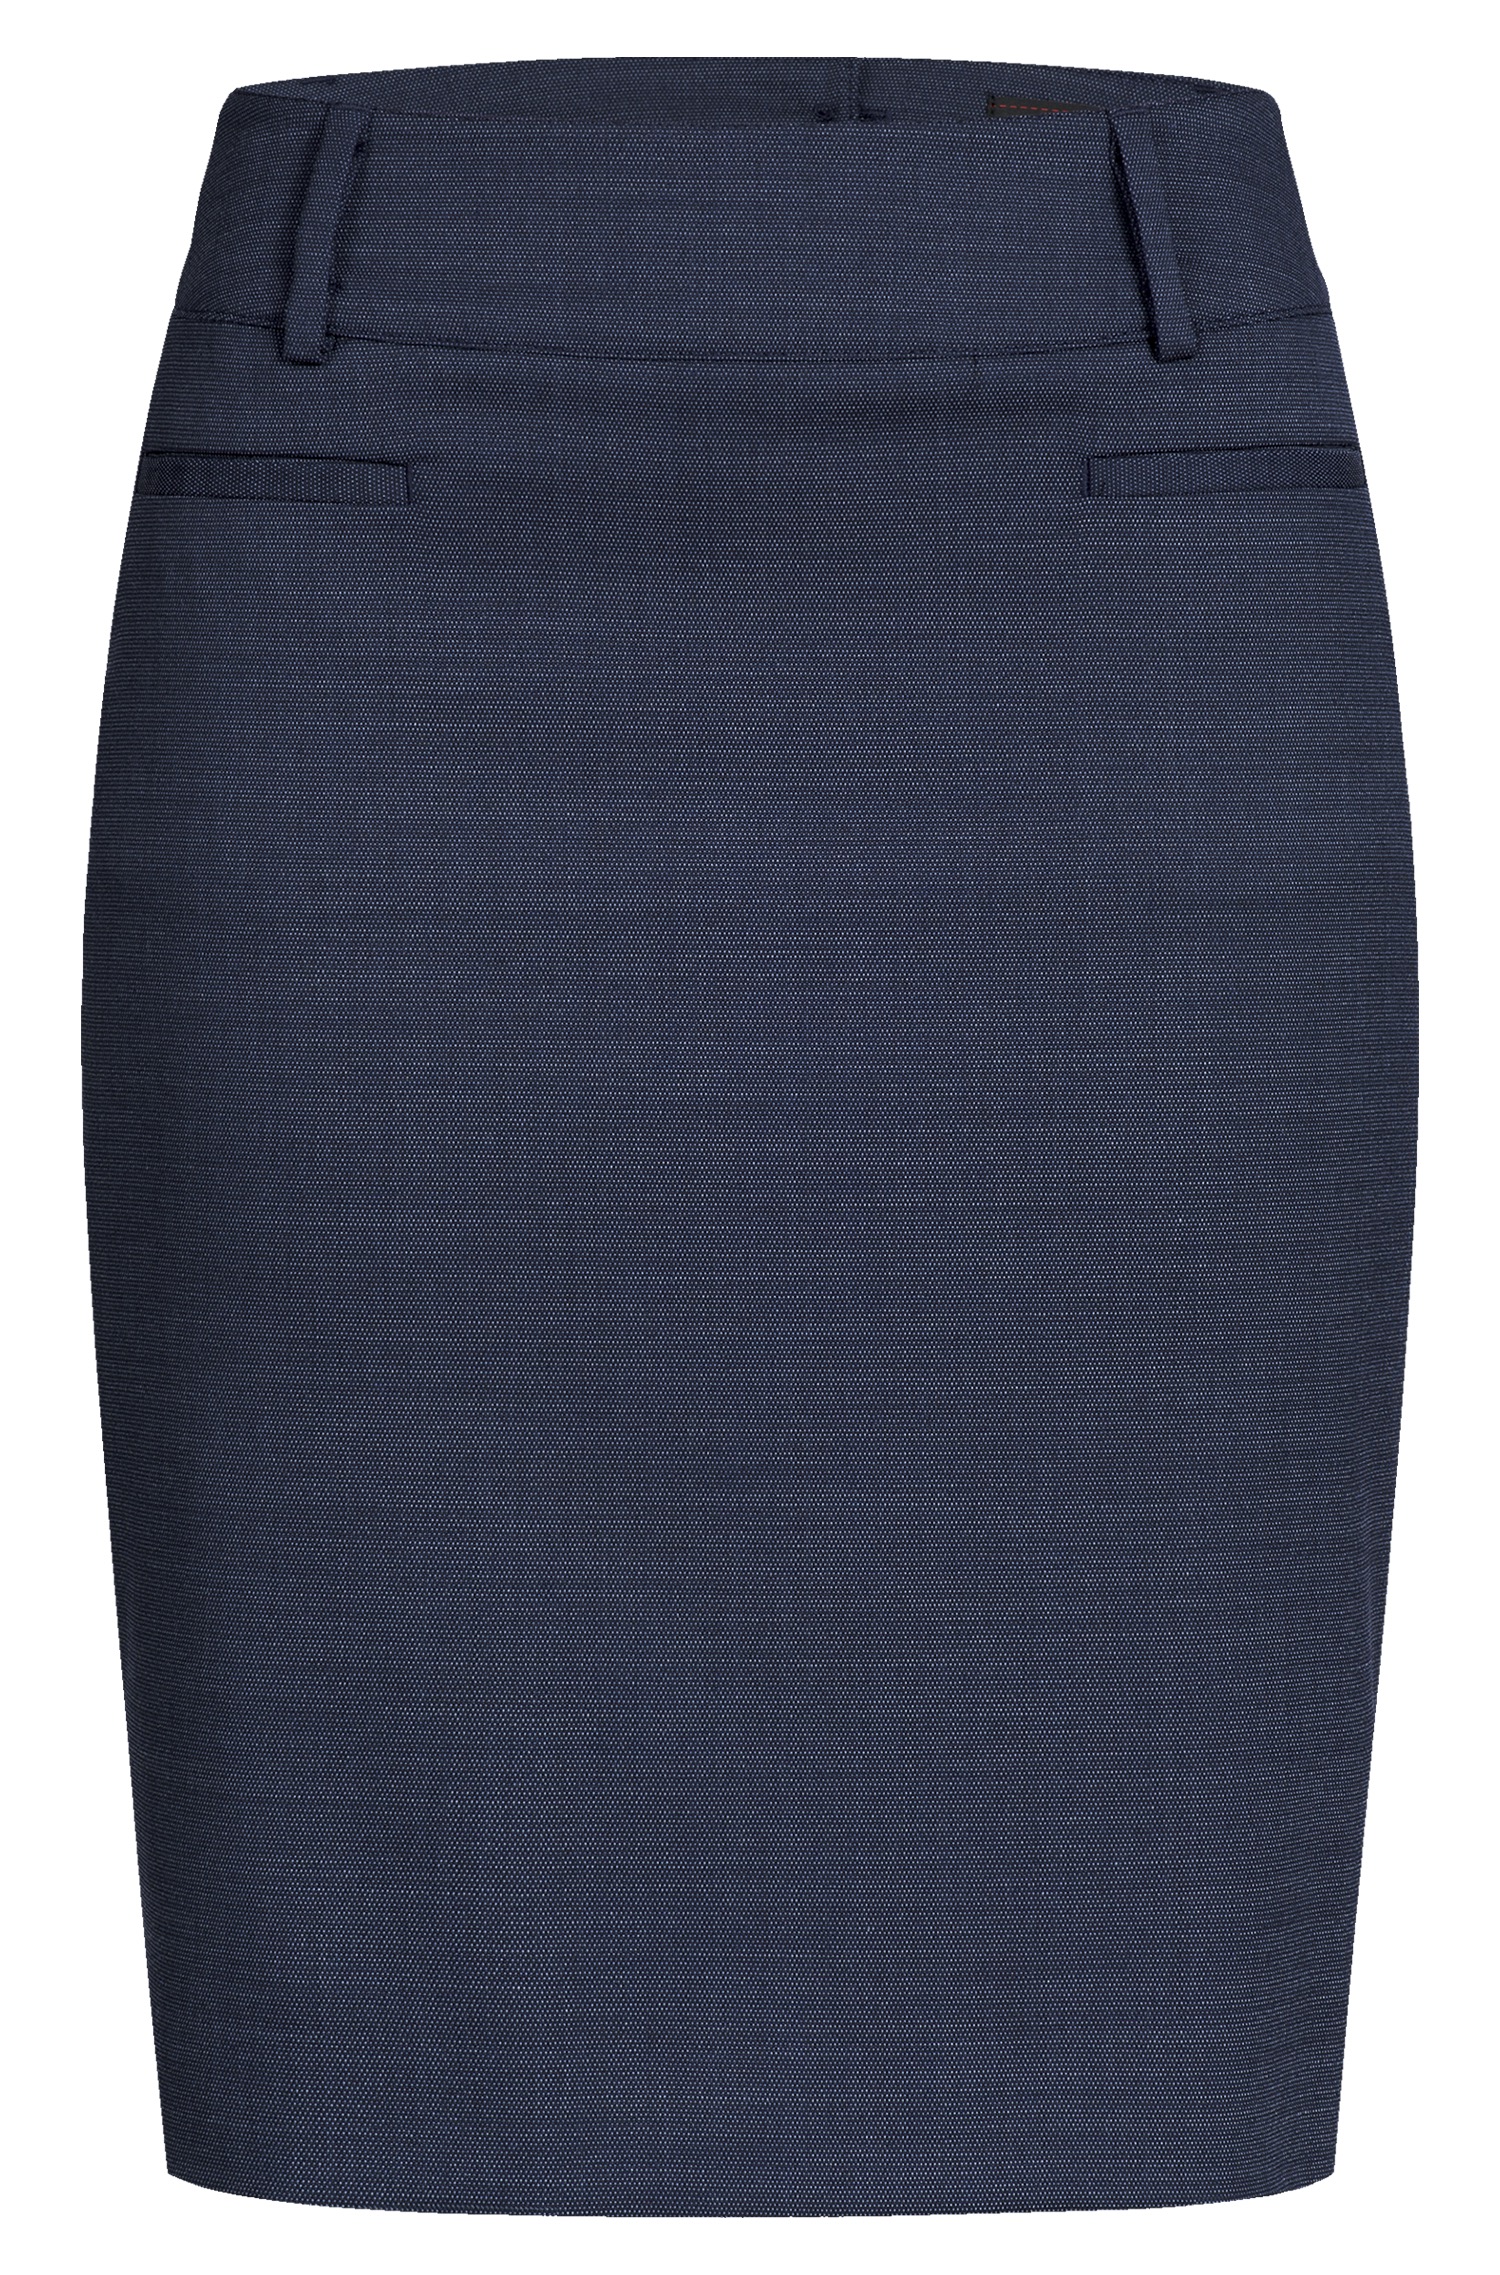 GREIFF Corporate Wear Modern Damen-Stiftrock Regular Fit